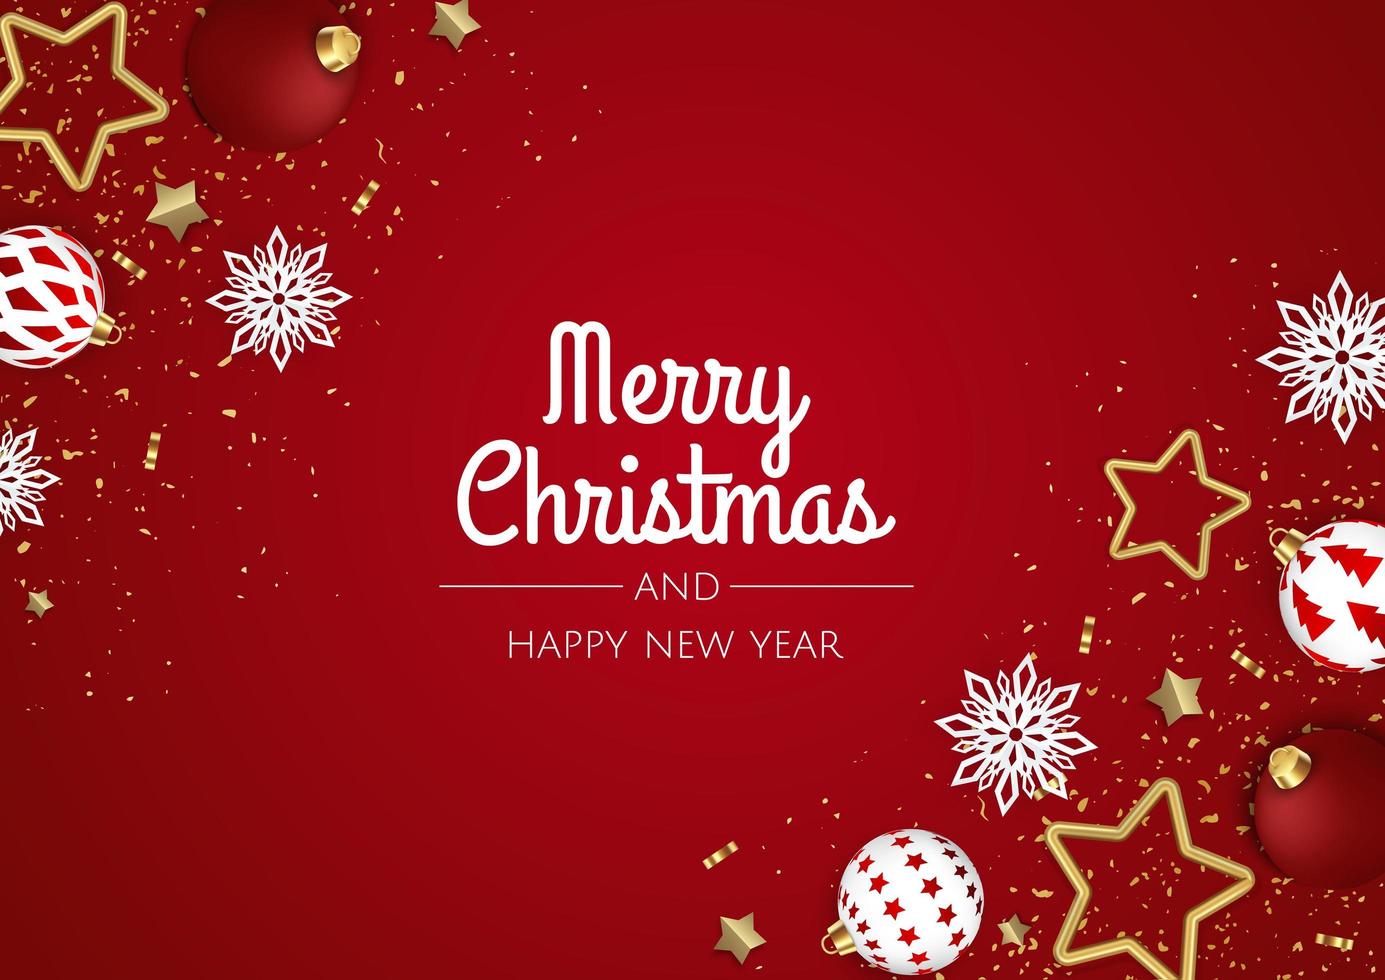 vrolijk kerstfeest en een gelukkig nieuwjaar. xmas feestelijke achtergrond met realistische 3D-objecten, witte en gouden ballen. vector